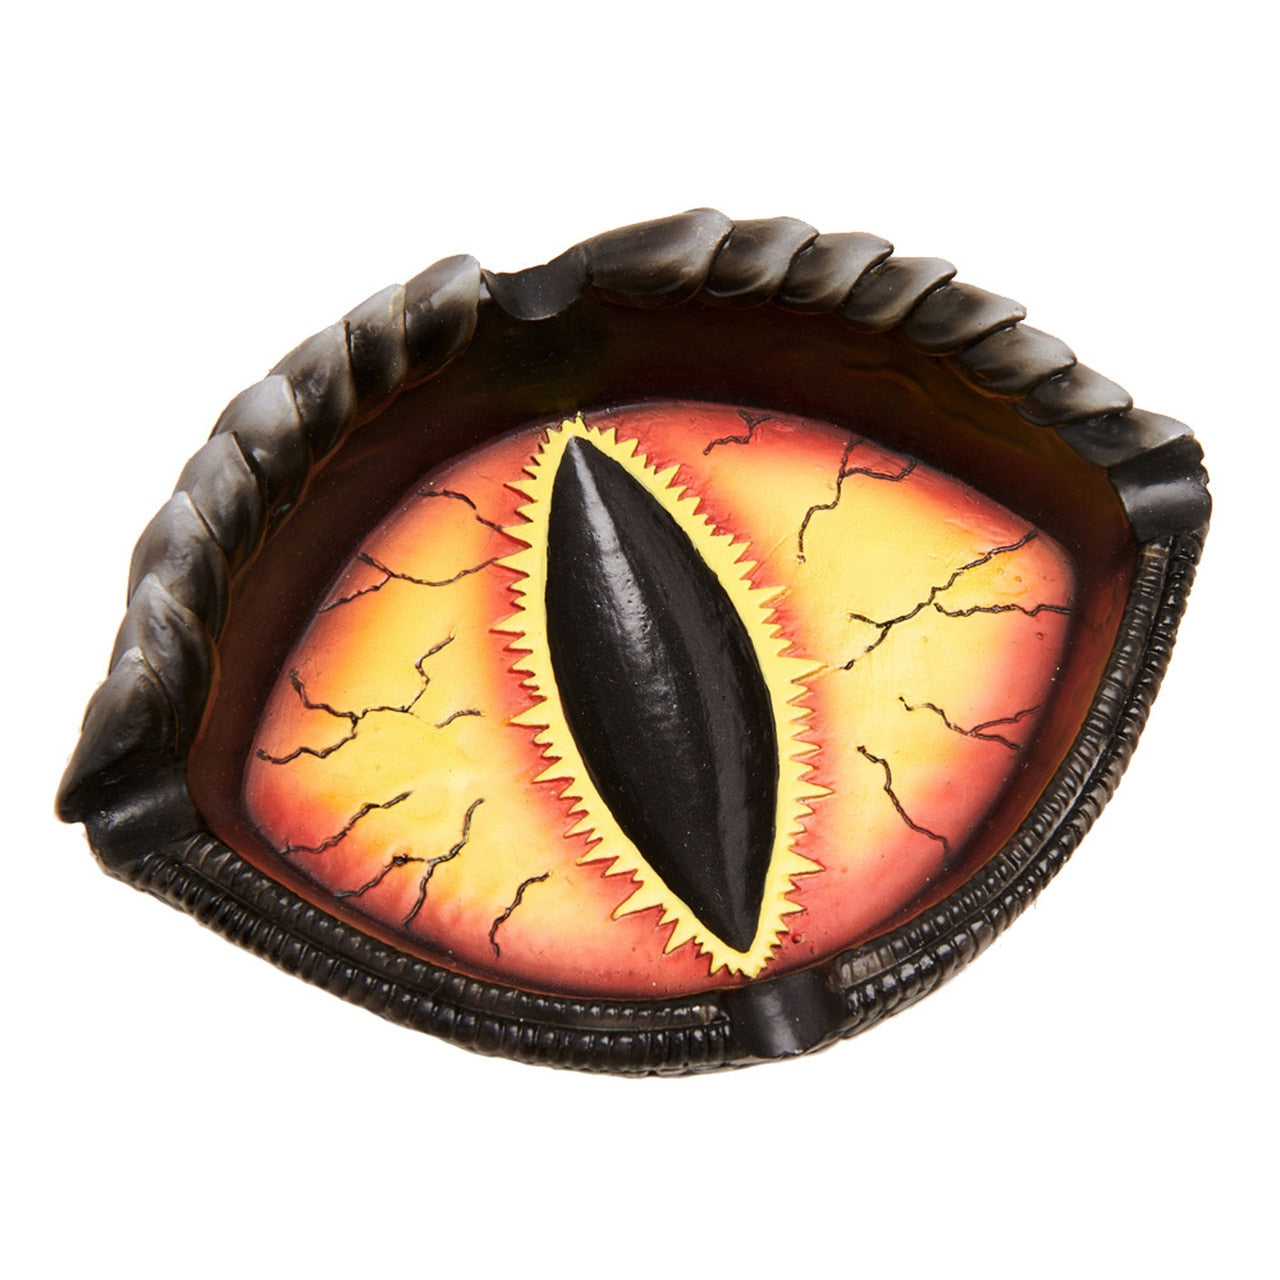 Black, orange and yellow dragon eye ashtray